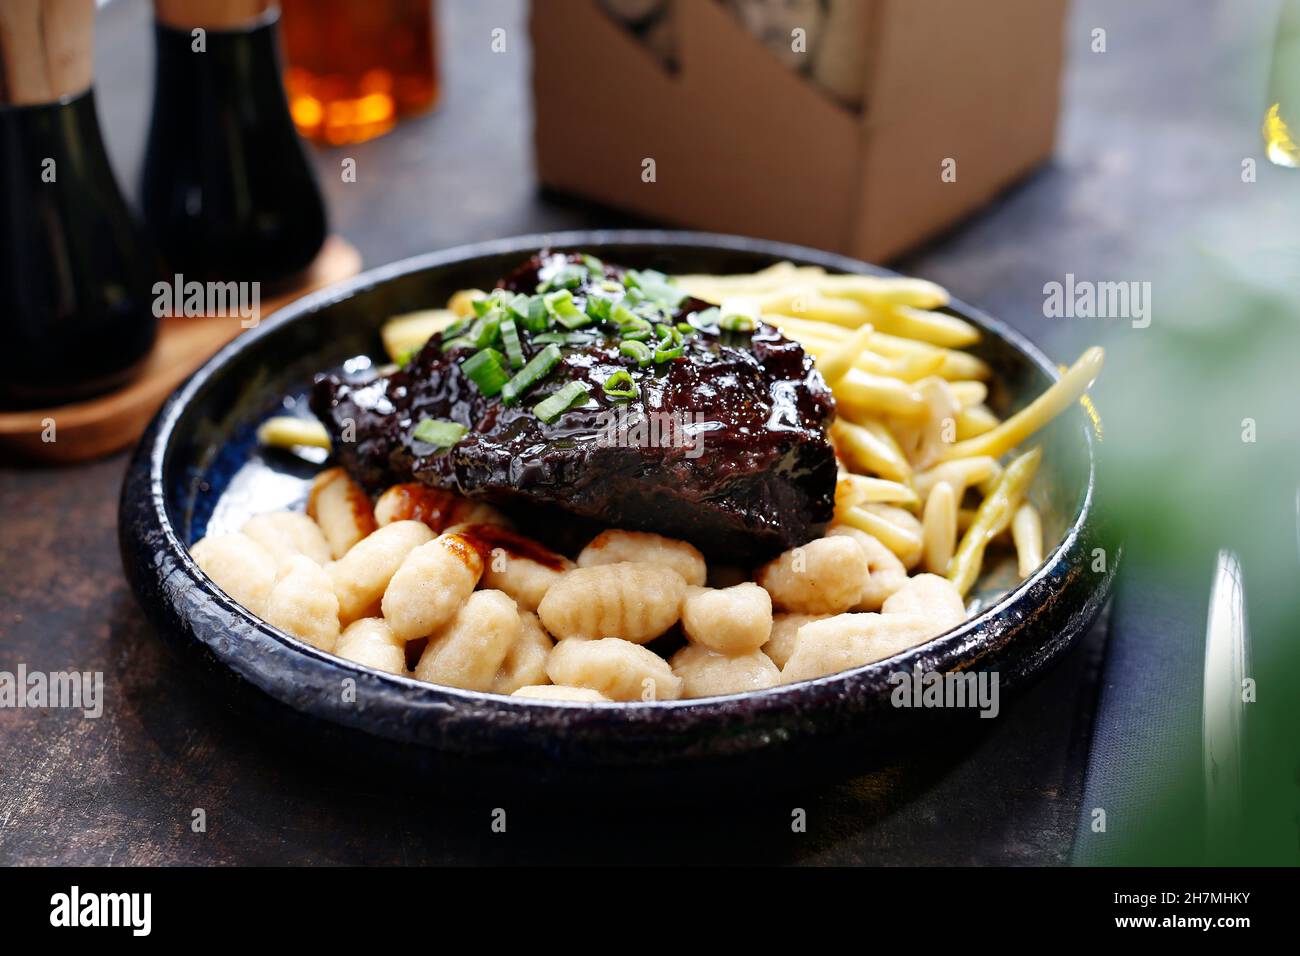 Viande rôtie en sauce barbecue avec frites et gnocchi.Un délicieux plat.photographie culinaire.Suggestion de servir le plat. Banque D'Images